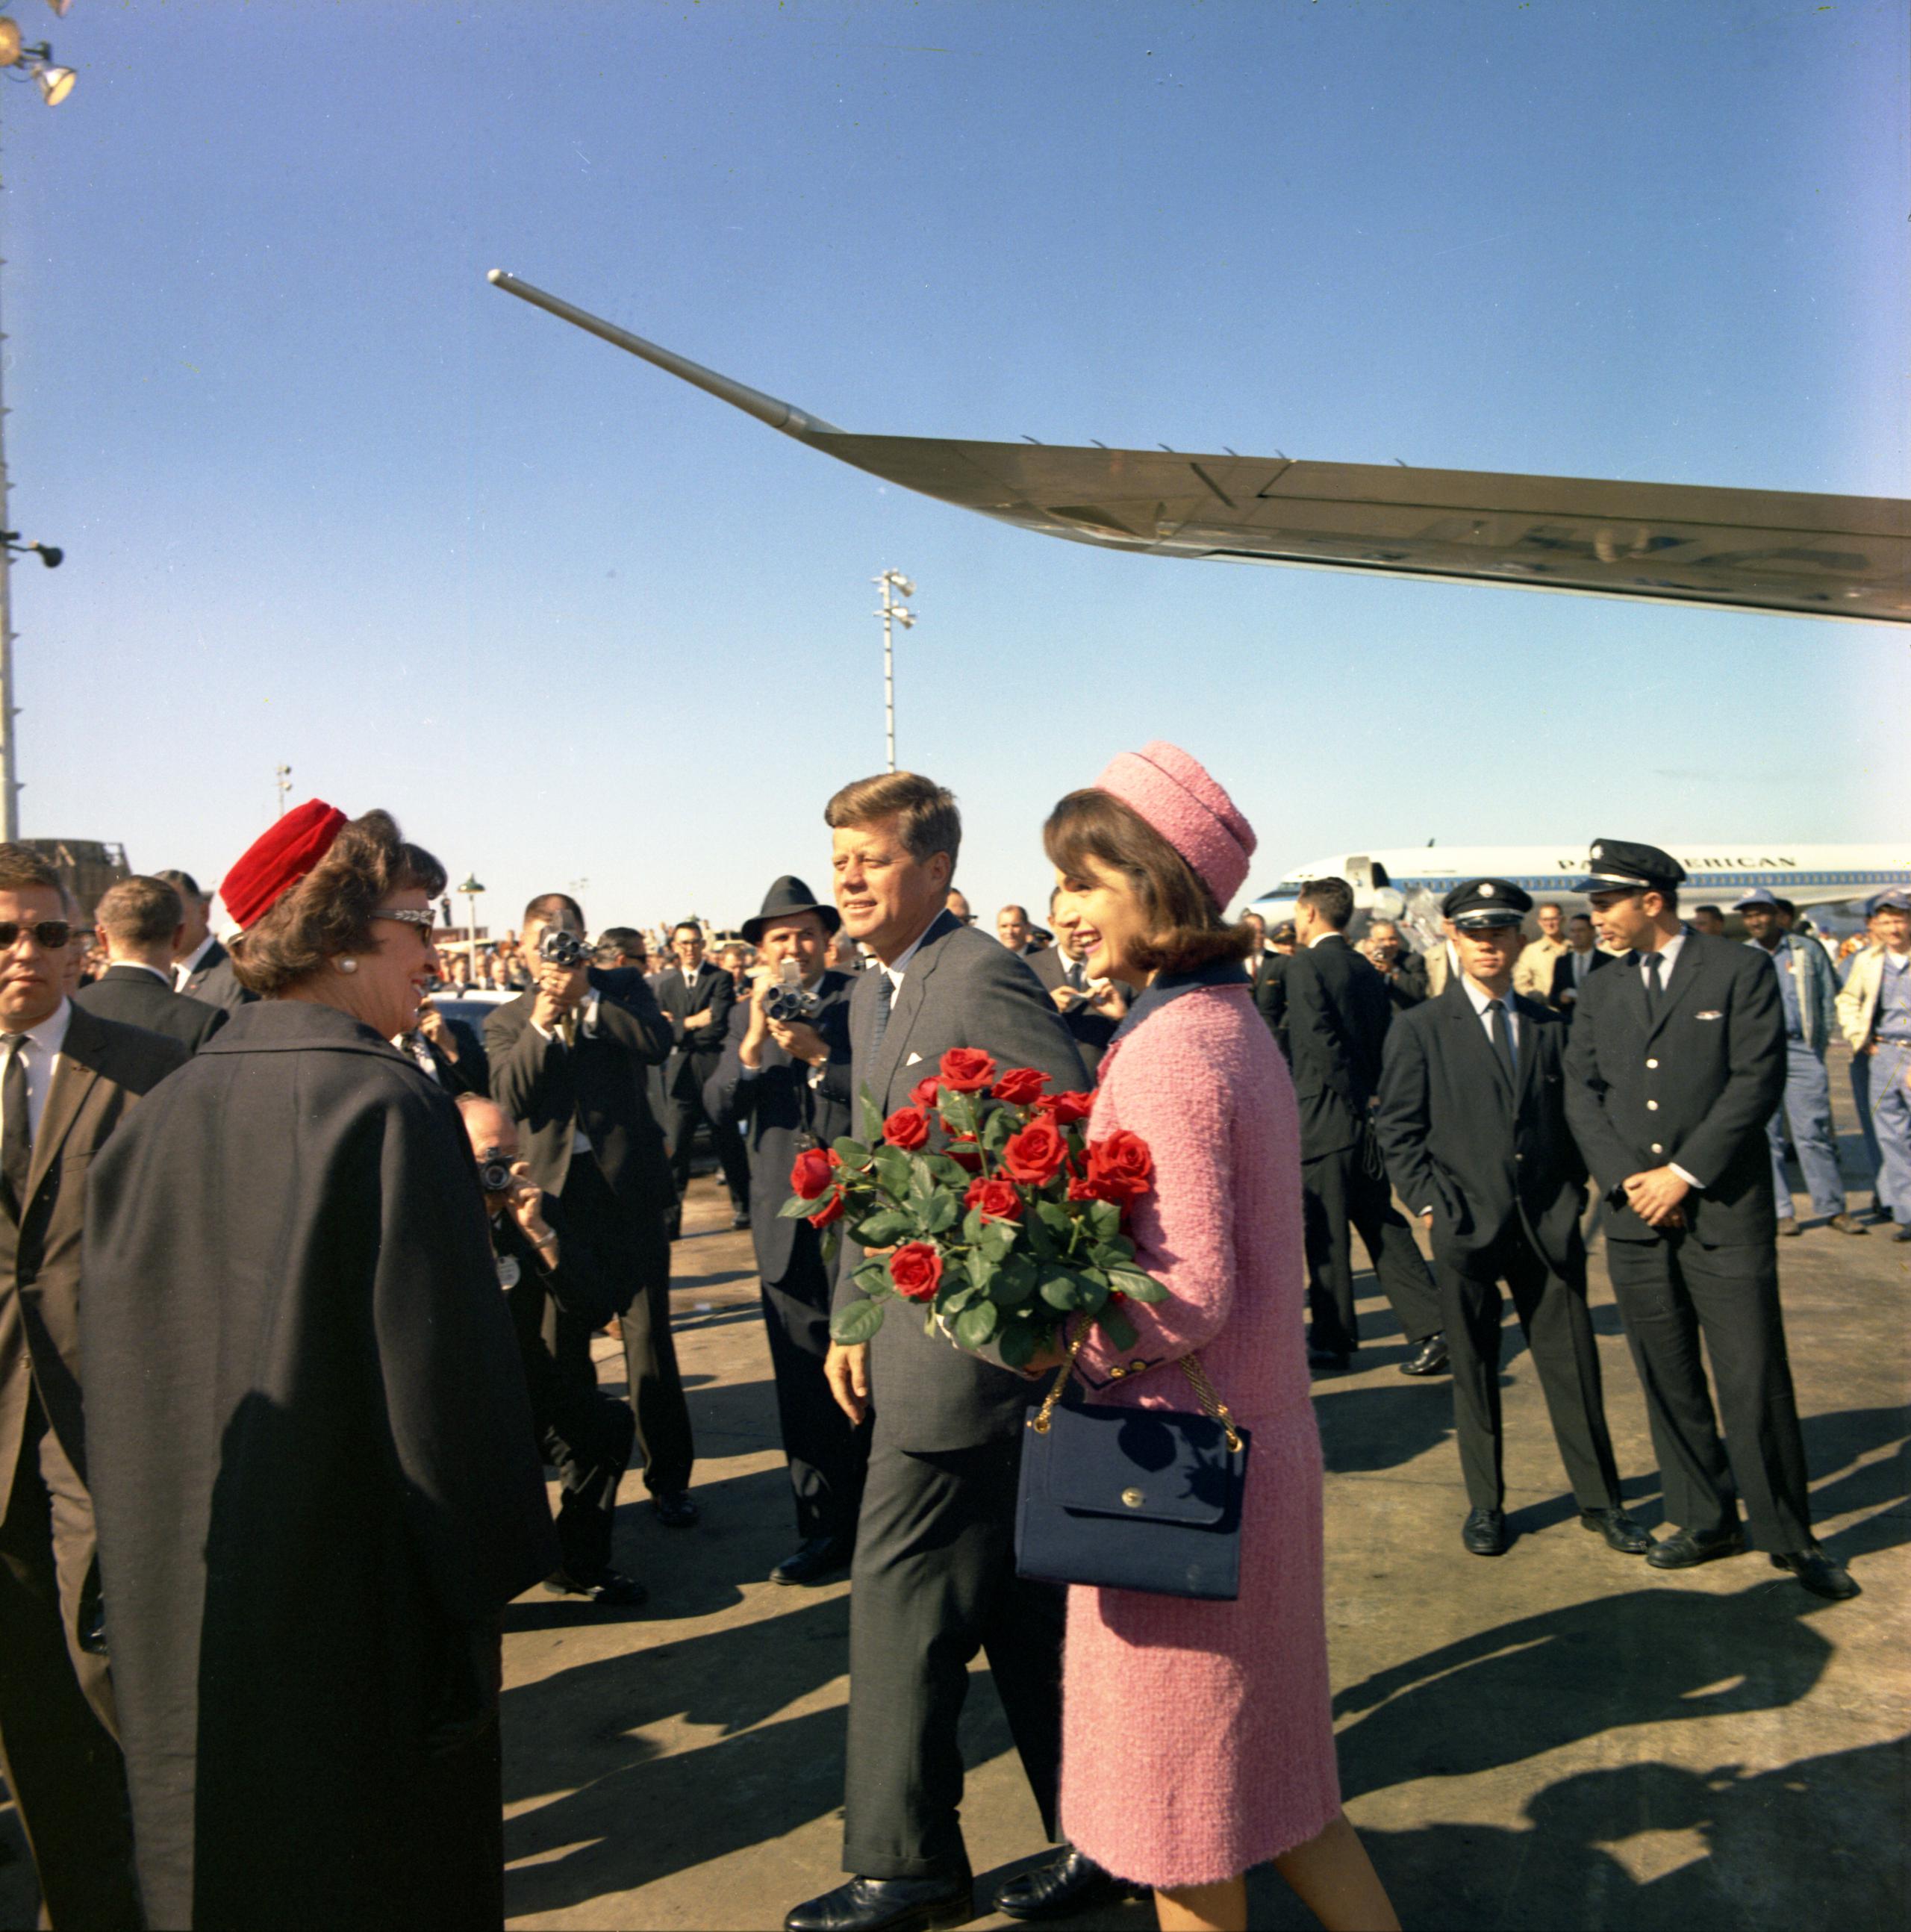 Fotografía cedida hoy por la Biblioteca y Museo Presidencial de John F. Kennedy donde aparece el presidente Kennedy y su esposa, la primera dama Jacqueline B. Kennedy, a su llegada el 22 de noviembre de 1963 al aeropuerto local de Love Field en Dallas, Texas (EE.UU). (EFE/Biblioteca y Museo Presidencial de John F. Kennedy /Cecil Stoughton)